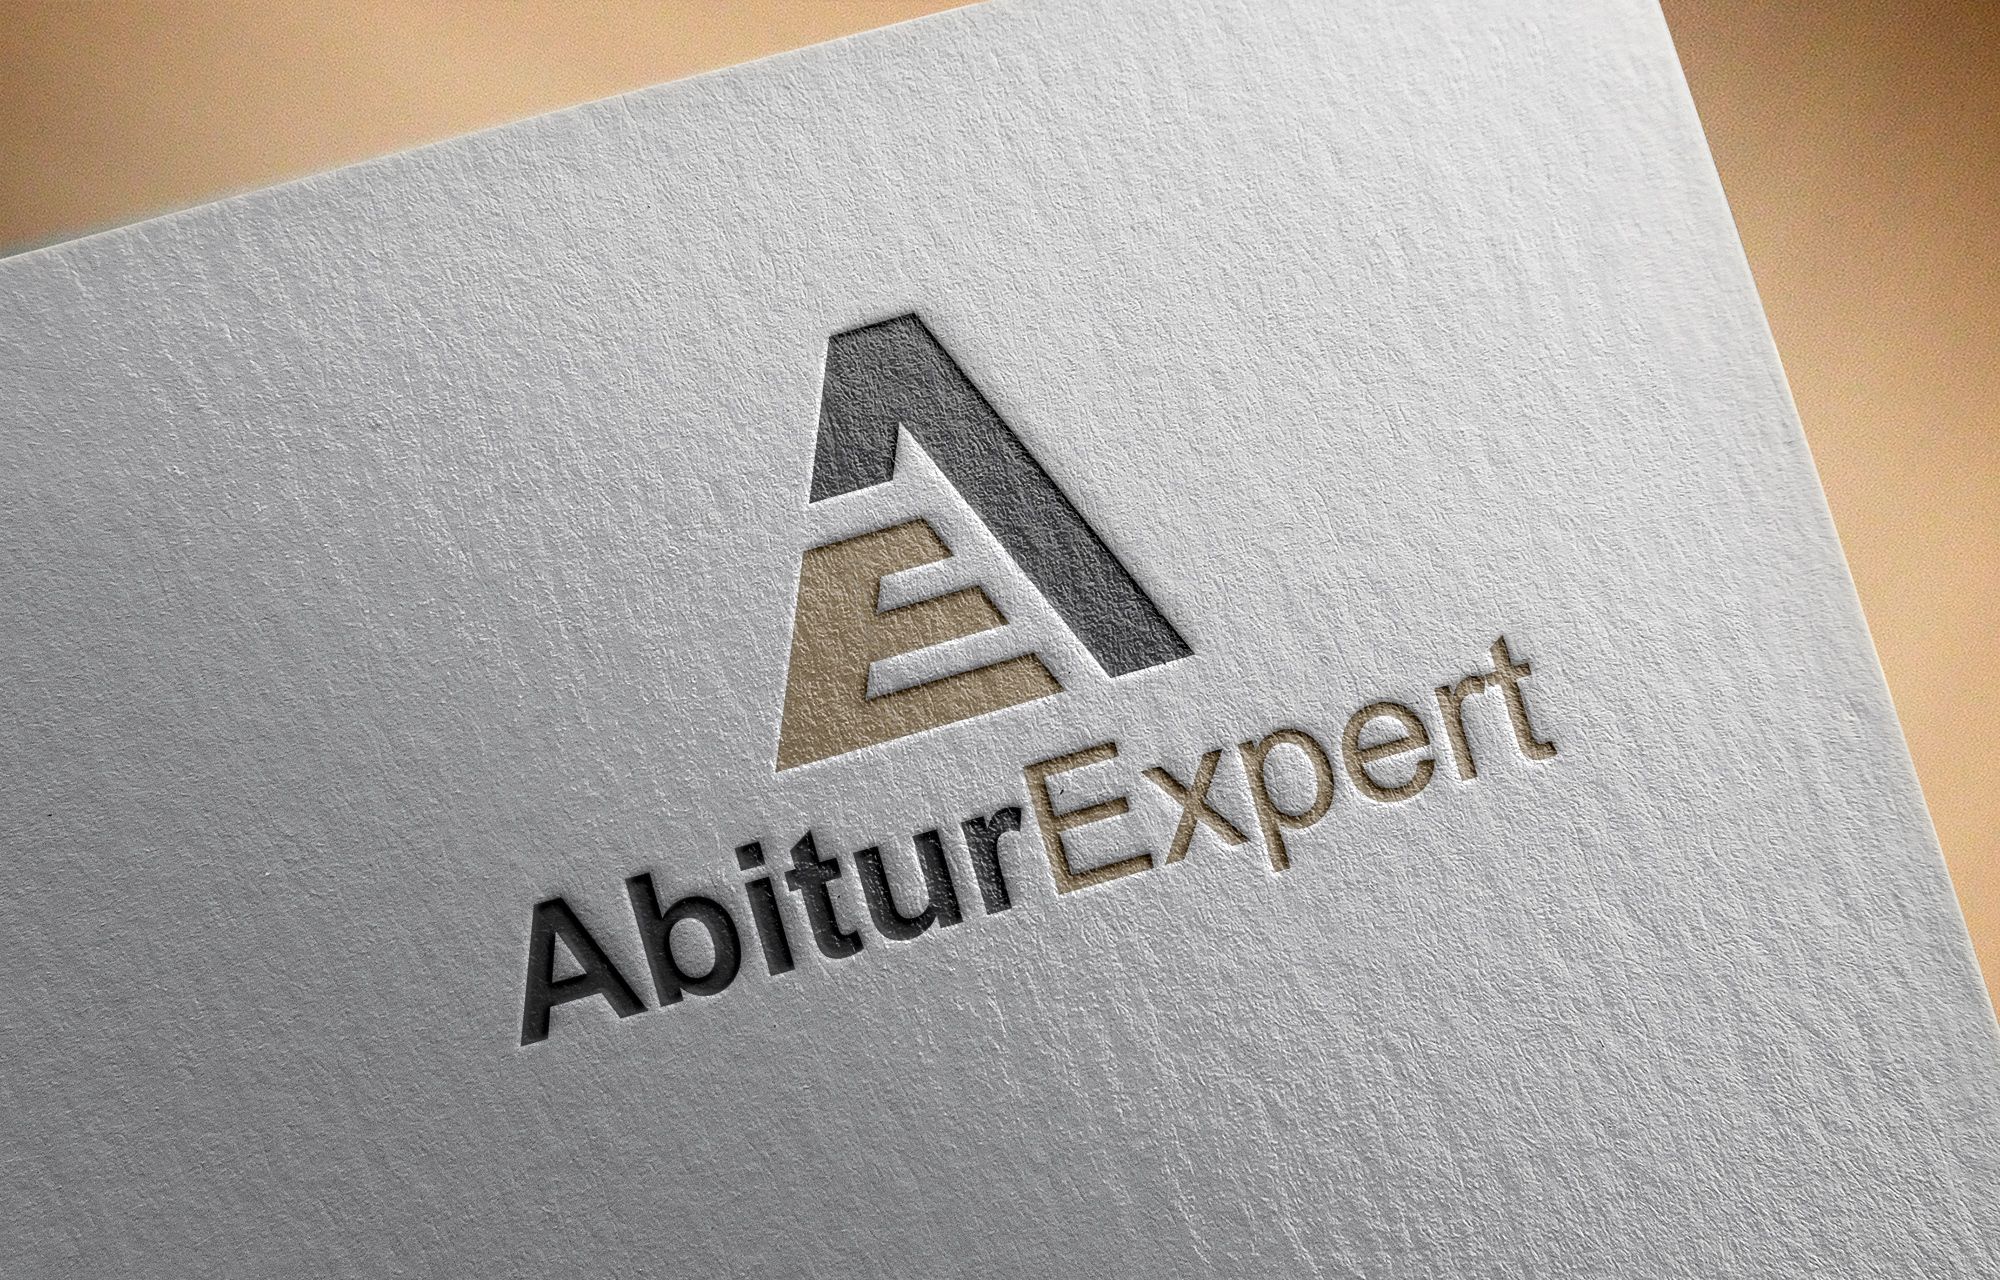 Логотип для AbiturExpert - дизайнер serz4868